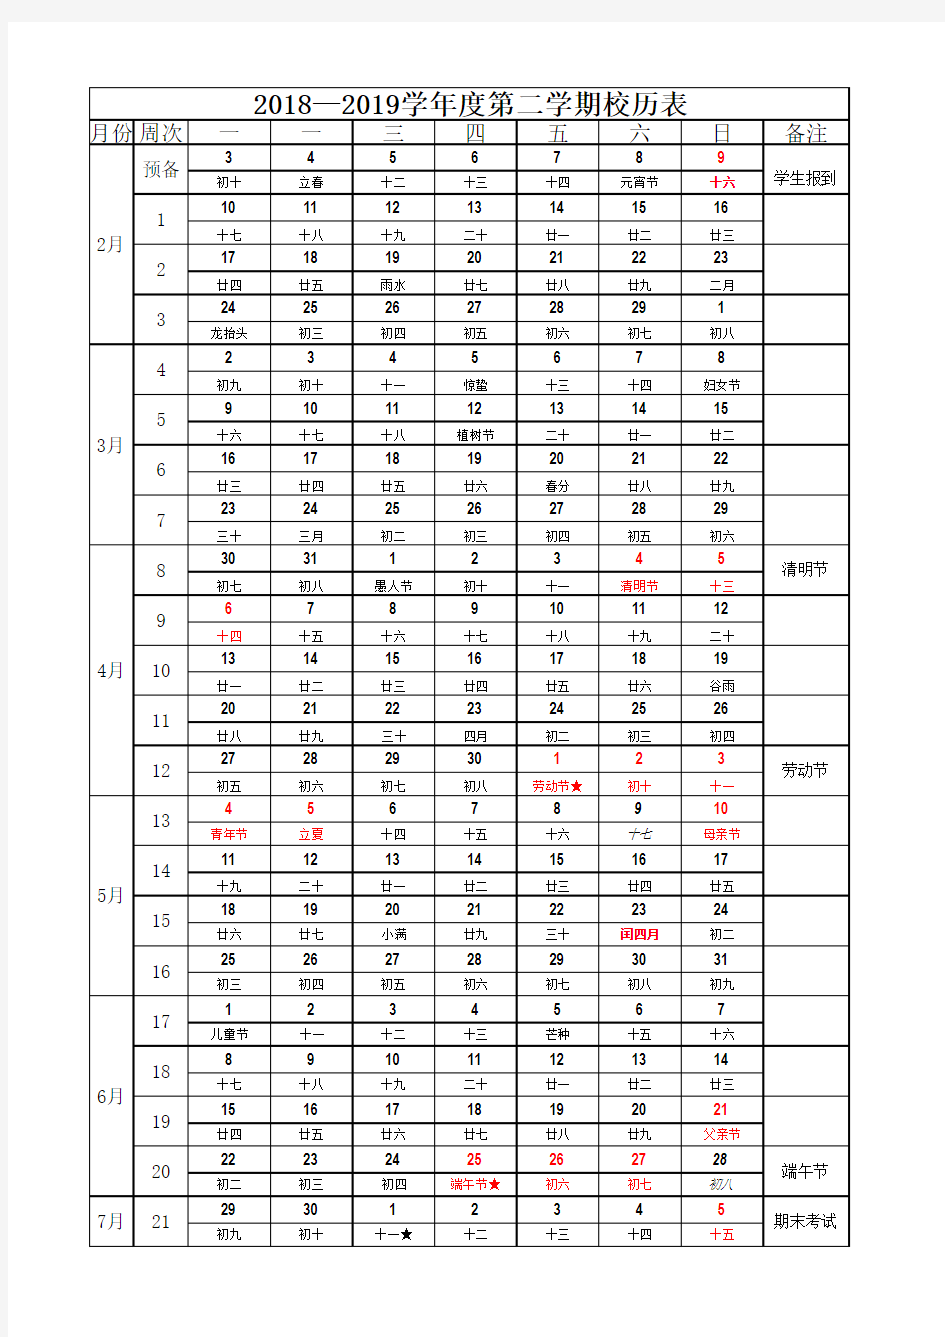 2019-2020年第二学期学期校历表(带农历)